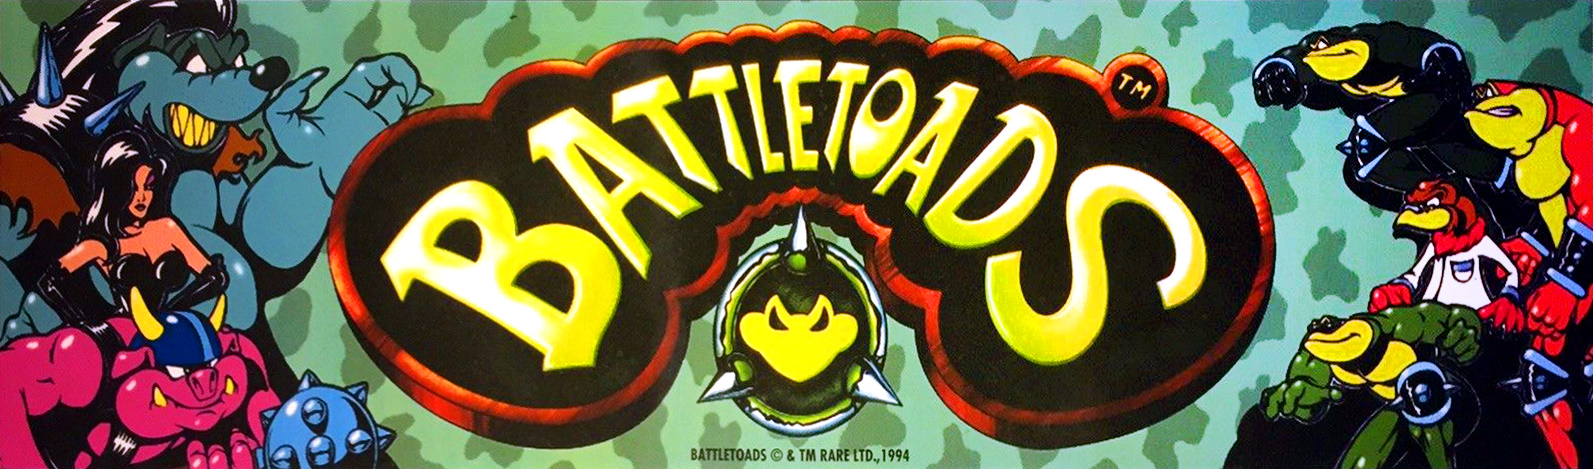 download battletoads arcade